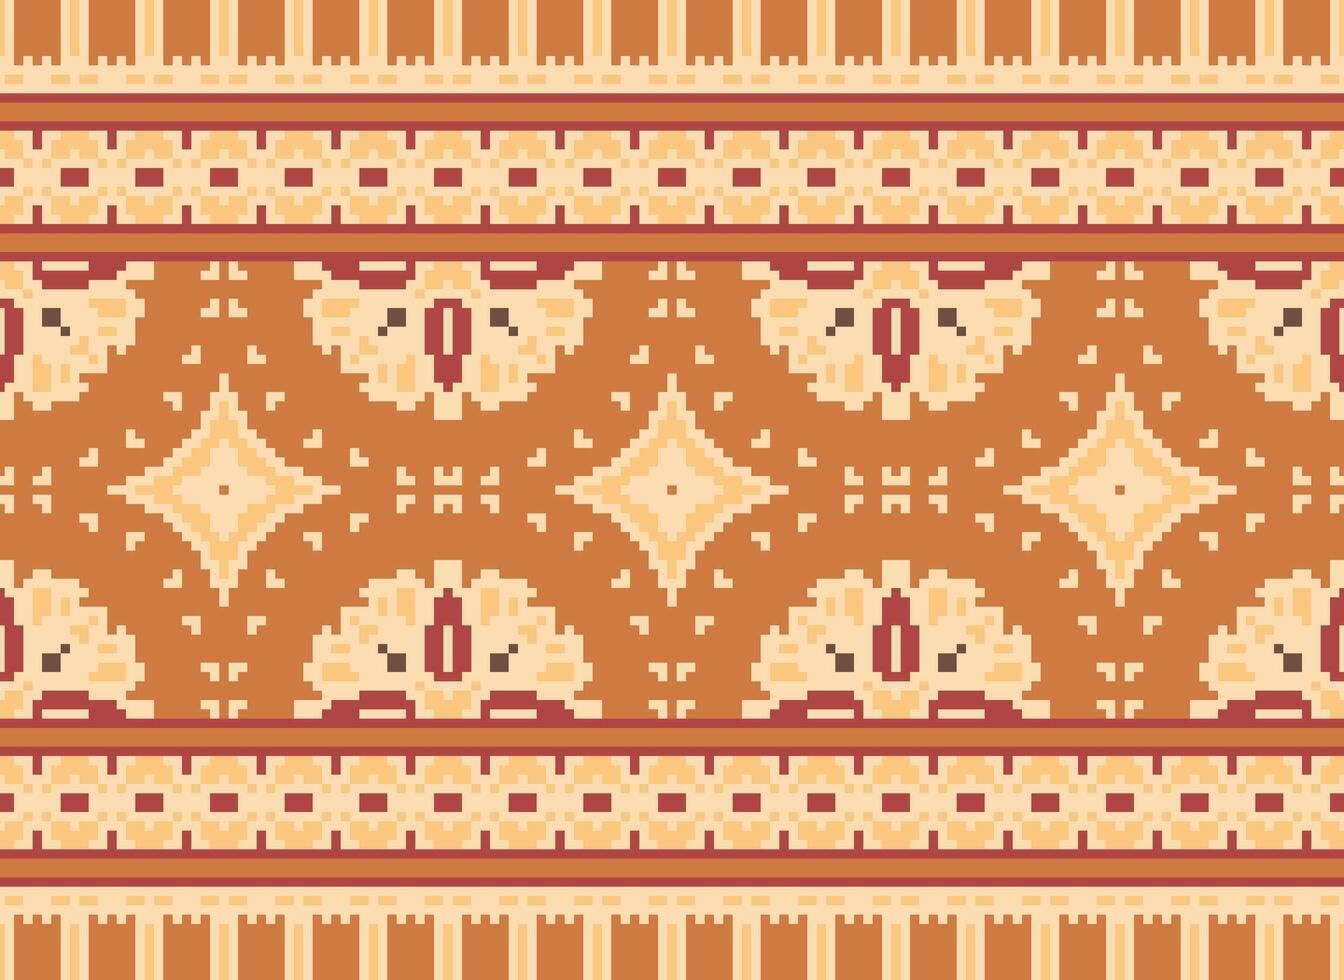 pixel kruis steek borduurwerk. etnisch patronen. inheems stijl. traditioneel ontwerp voor textuur, textiel, kleding stof, kleding, breigoed, afdrukken. meetkundig pixel horizontaal naadloos vector. vector